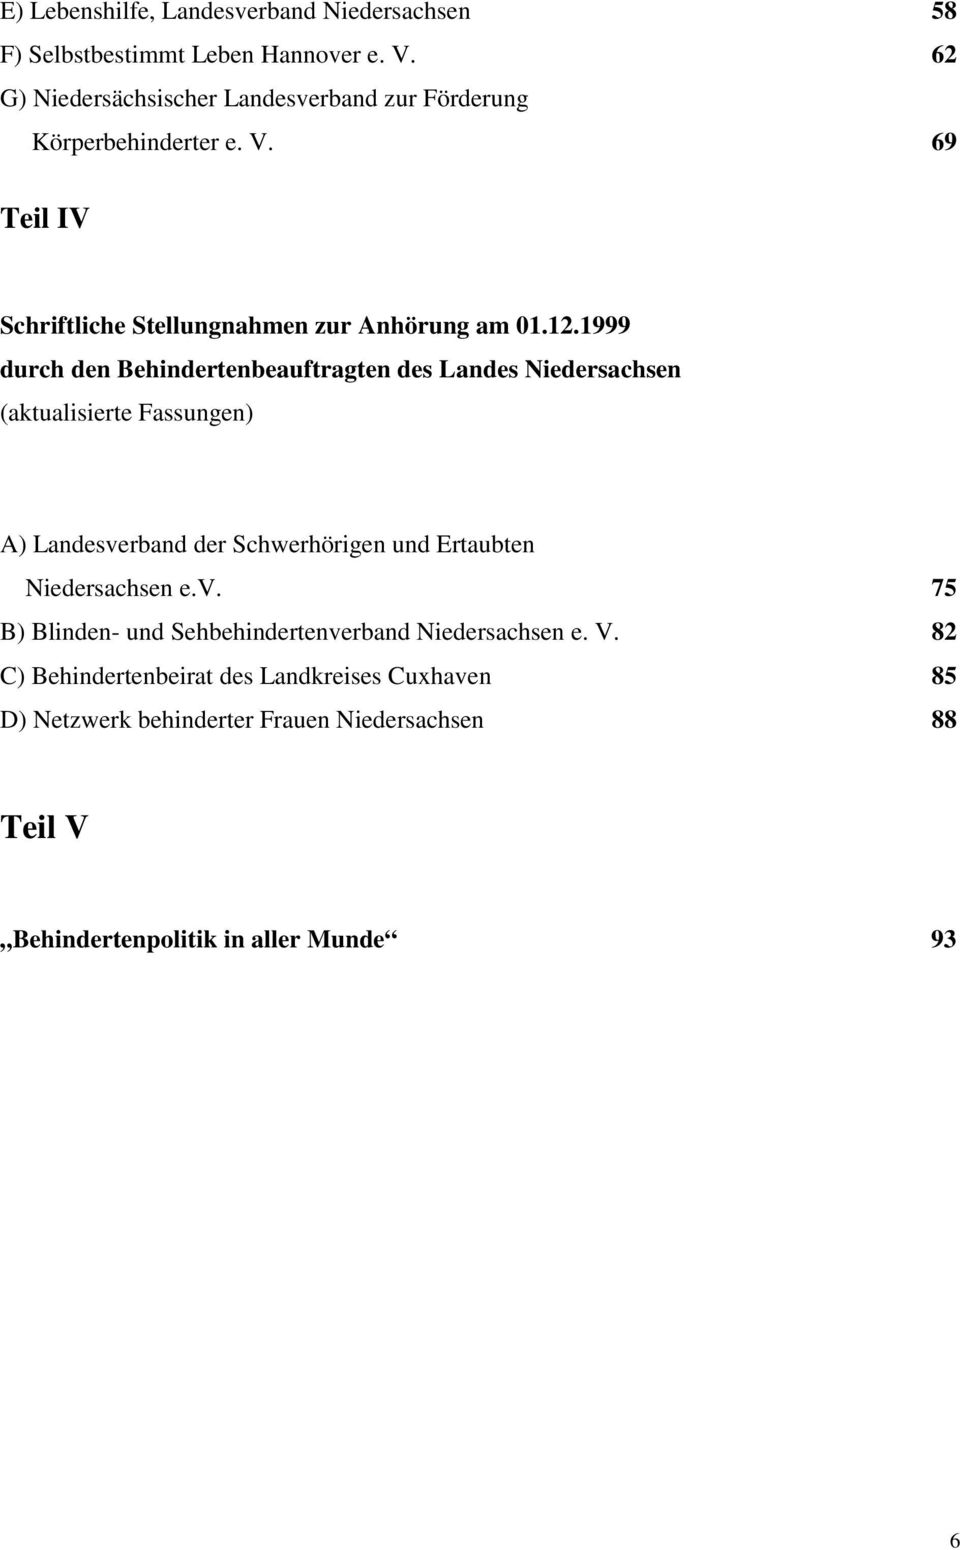 1999 durch den Behindertenbeauftragten des Landes Niedersachsen (aktualisierte Fassungen) A) Landesverband der Schwerhörigen und Ertaubten